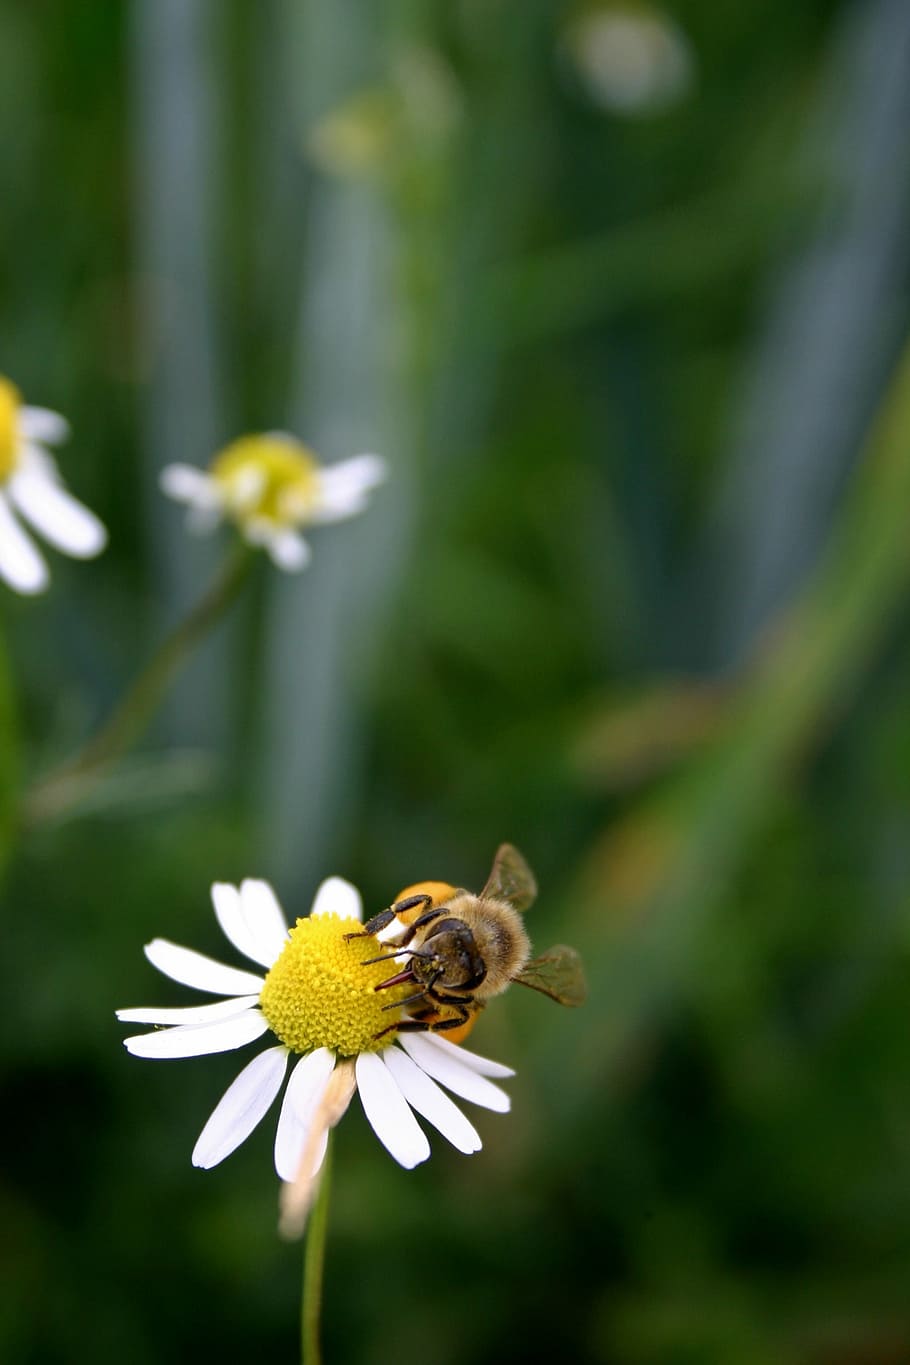 Abelha, mel, abelha de mel, inseto, flor, fechar, pólen, néctar, abelha européia, apis mellifera